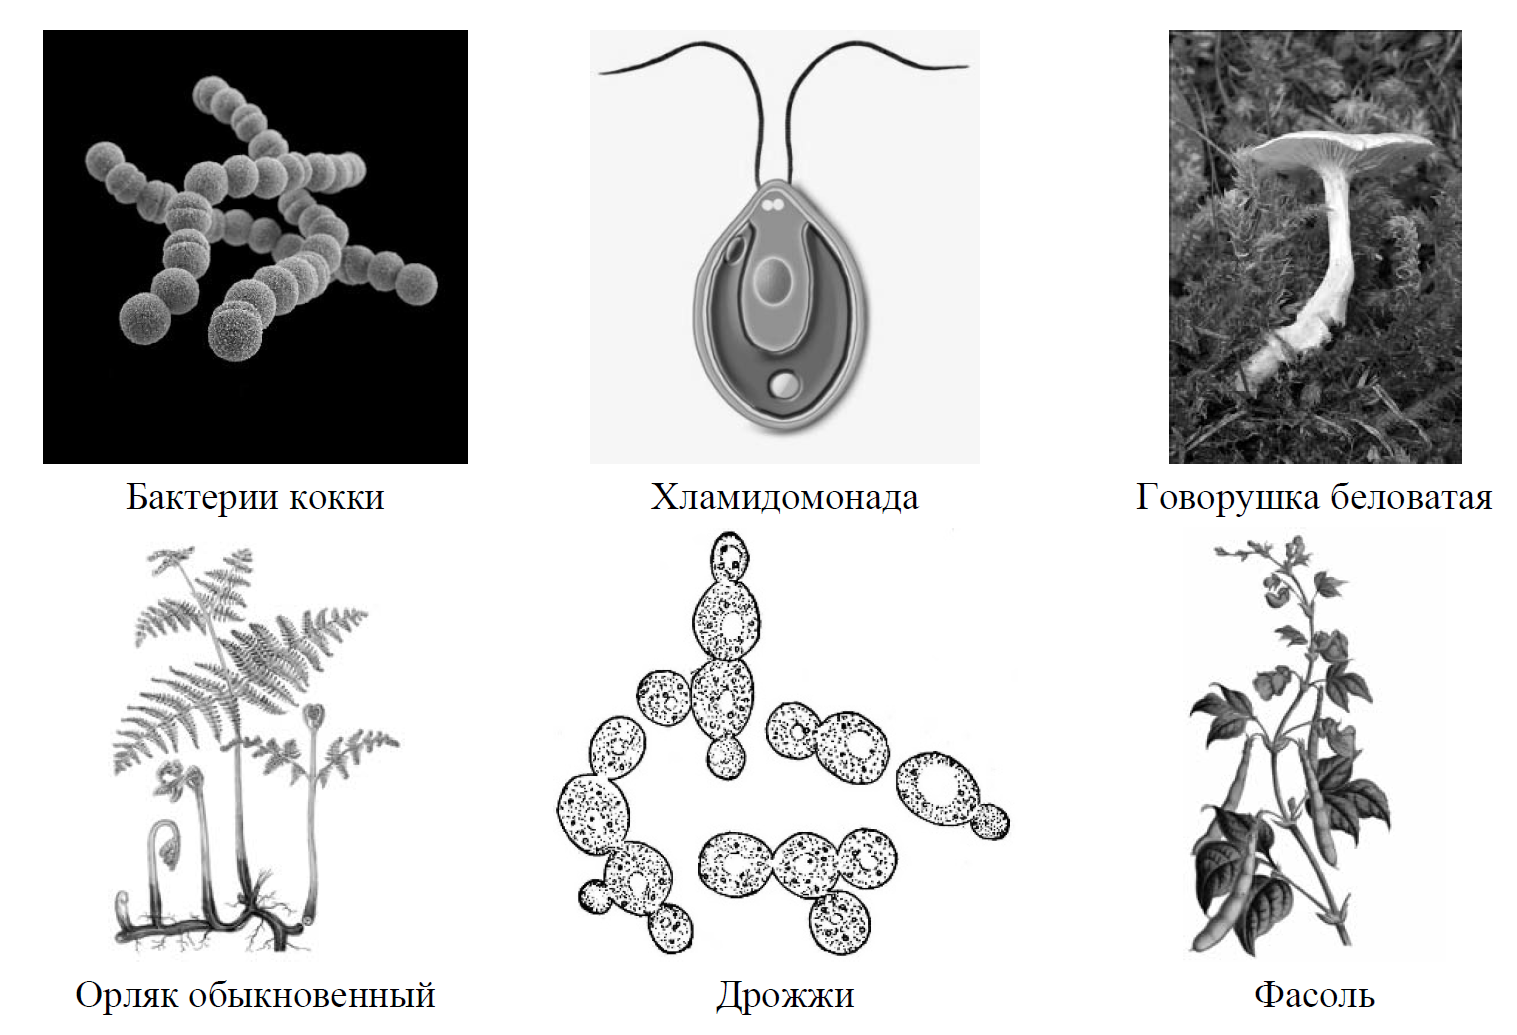 Рассмотрите изображение шести организмов. Сумчатые грибы ВПР. Рассмотрите изображение шести организмов предложите. Бактерии грибы животные ВПР. Рассмотрите изображение шести организмов впр